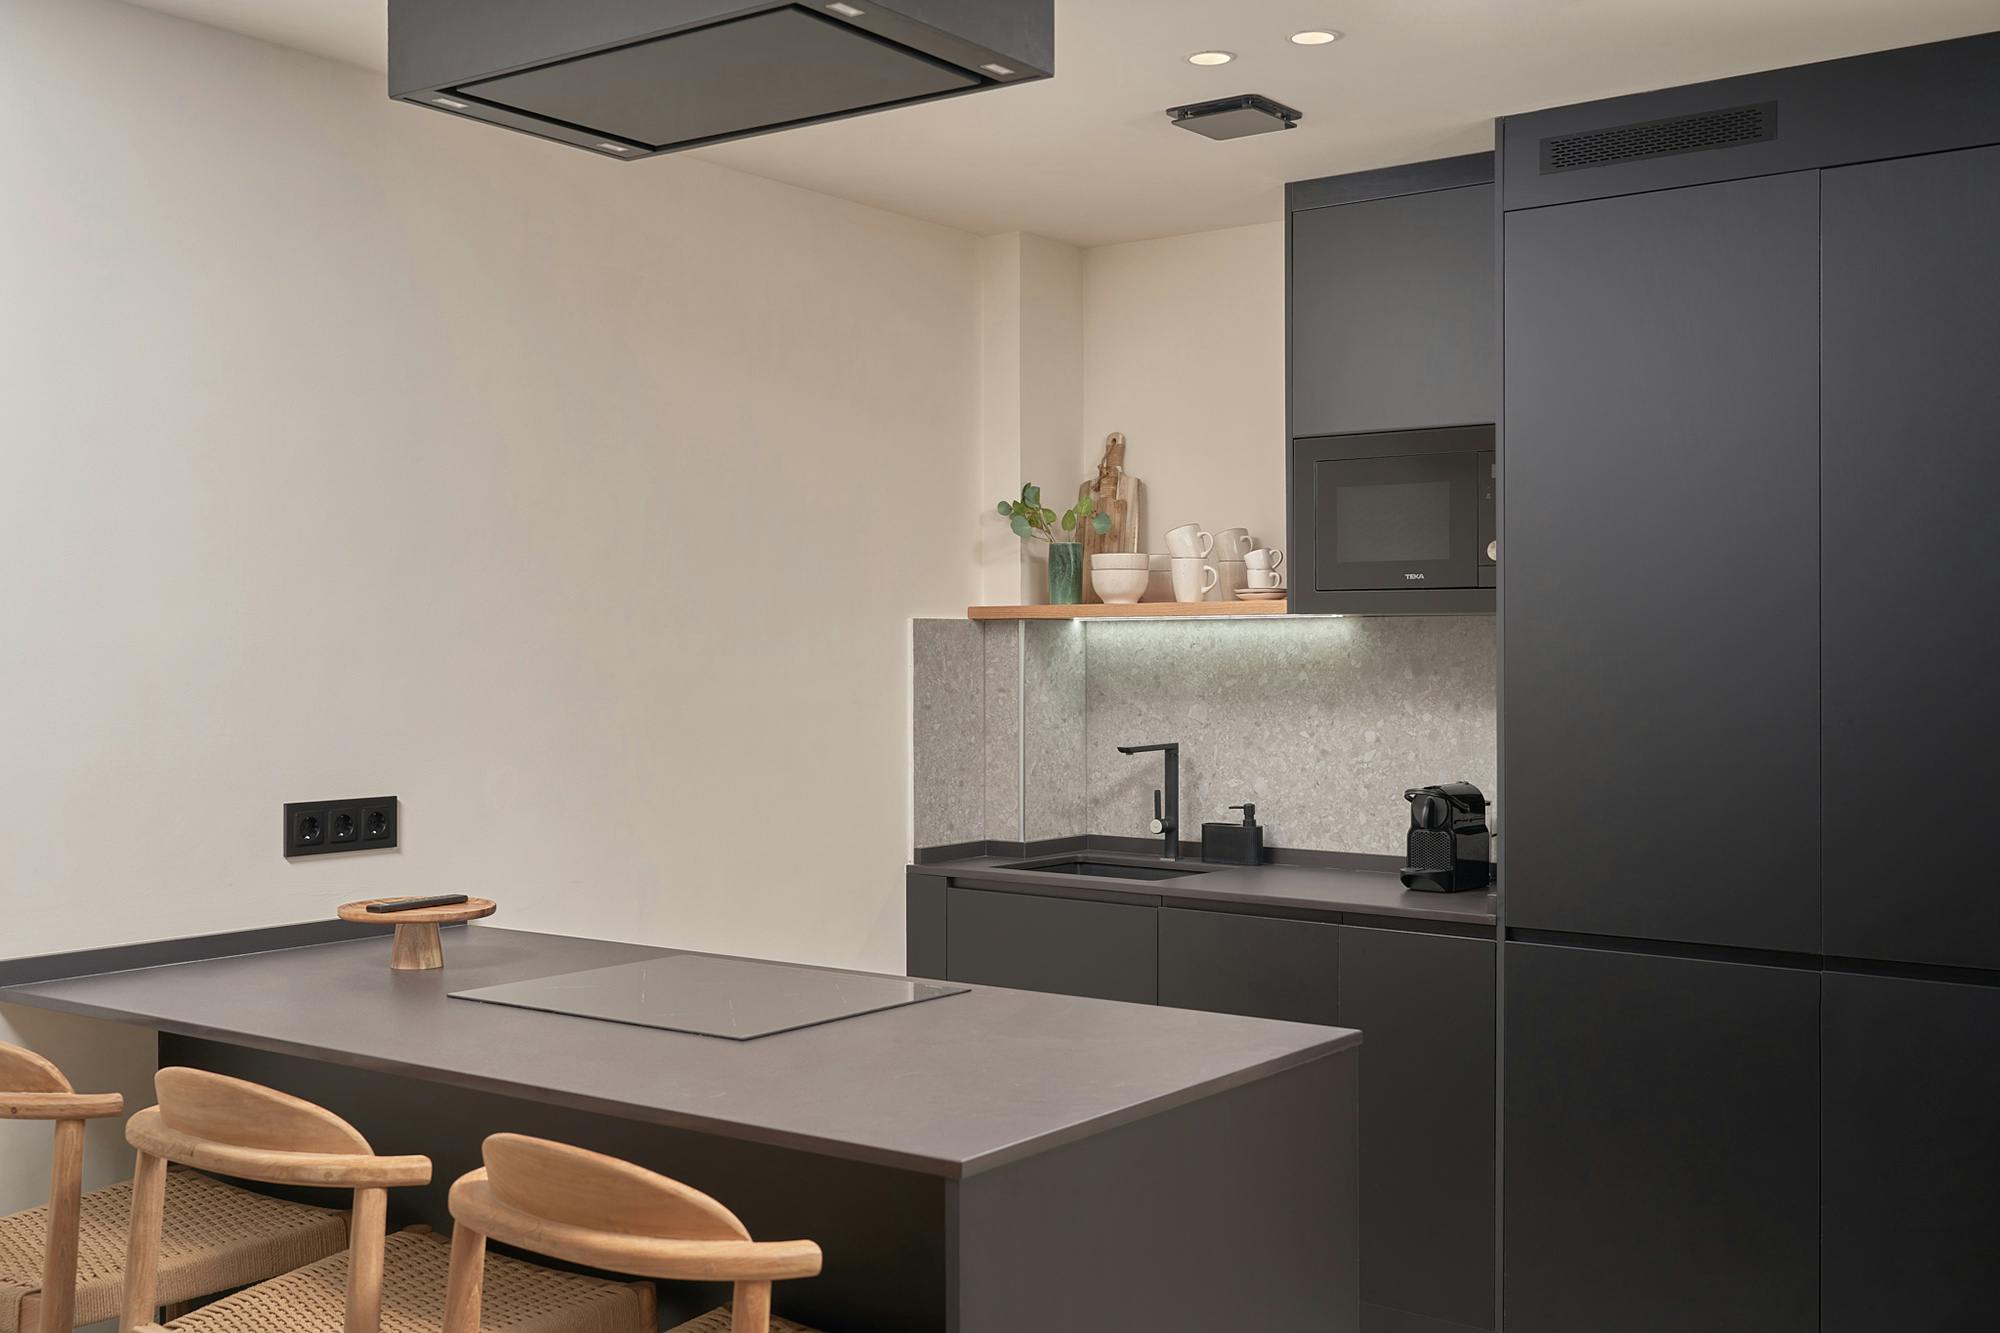 Numero immagine 34 della sezione corrente di DKTN for the stunning kitchens of a residential tower in Dubai di Cosentino Italia